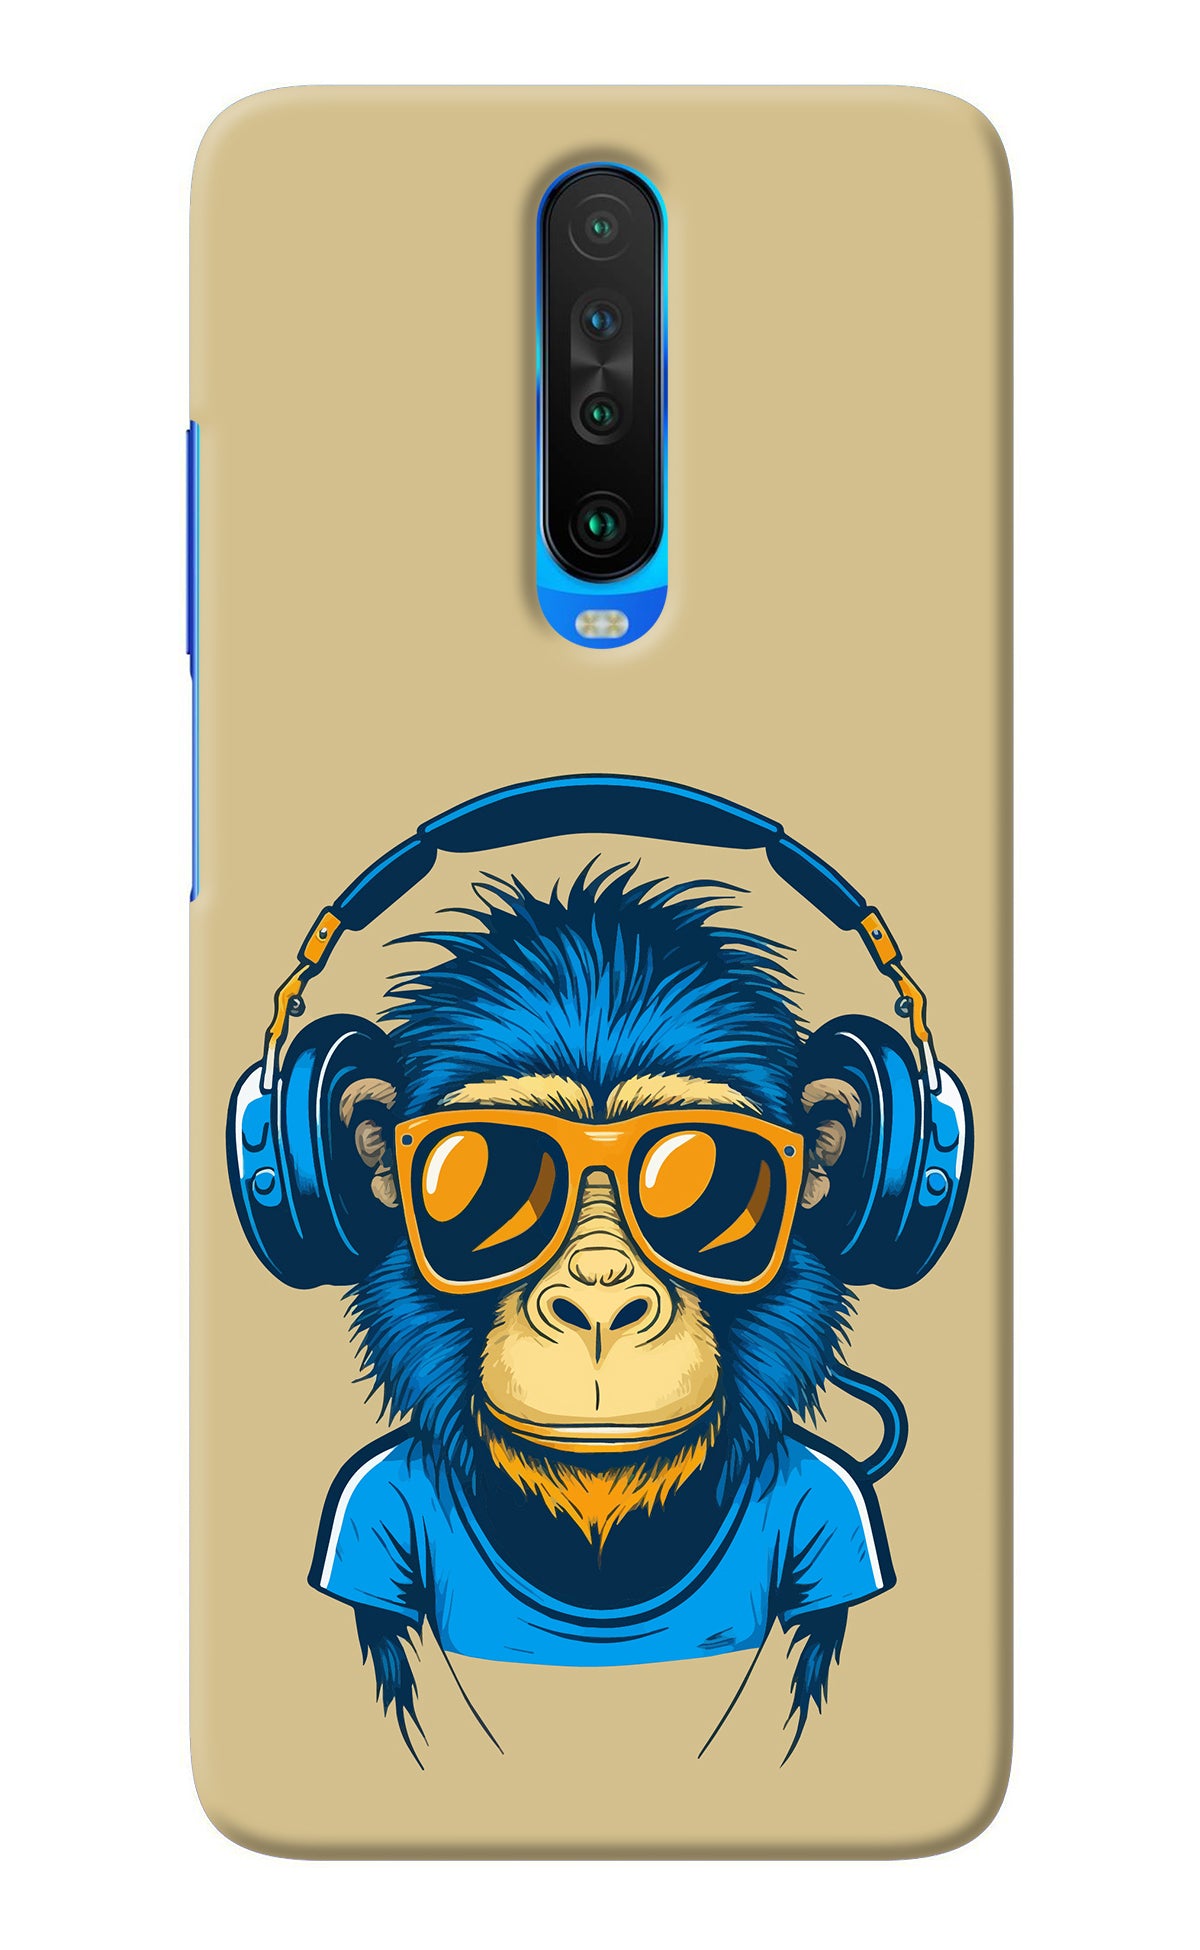 Monkey Headphone Poco X2 Back Cover